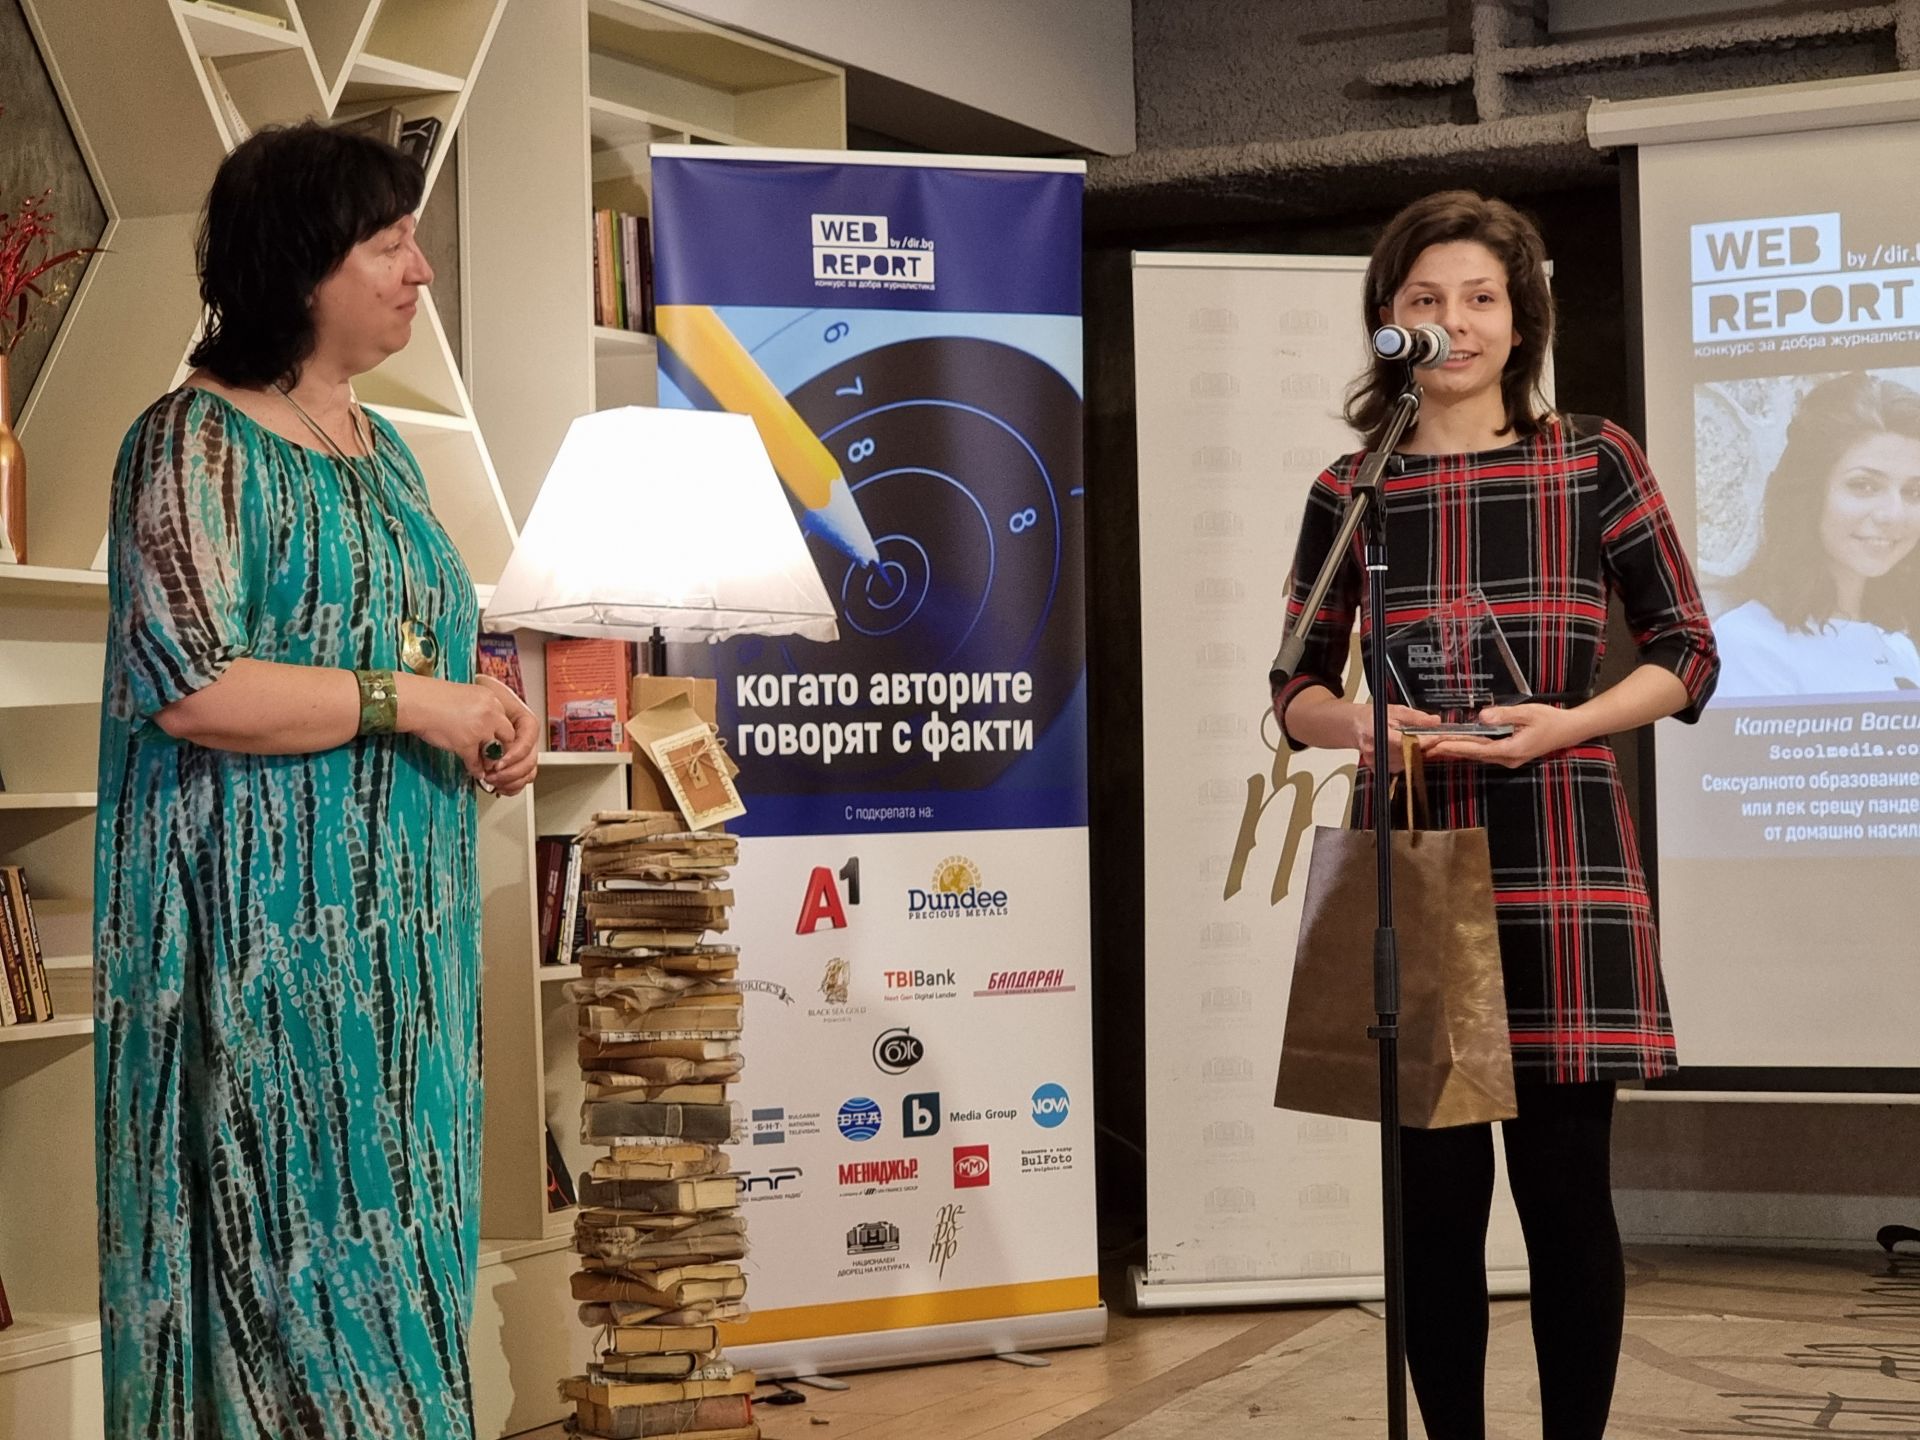 Най-добрият млад автор Катерина Василева пое наградата от председателя на СБЖ - Снежана Тодорова.